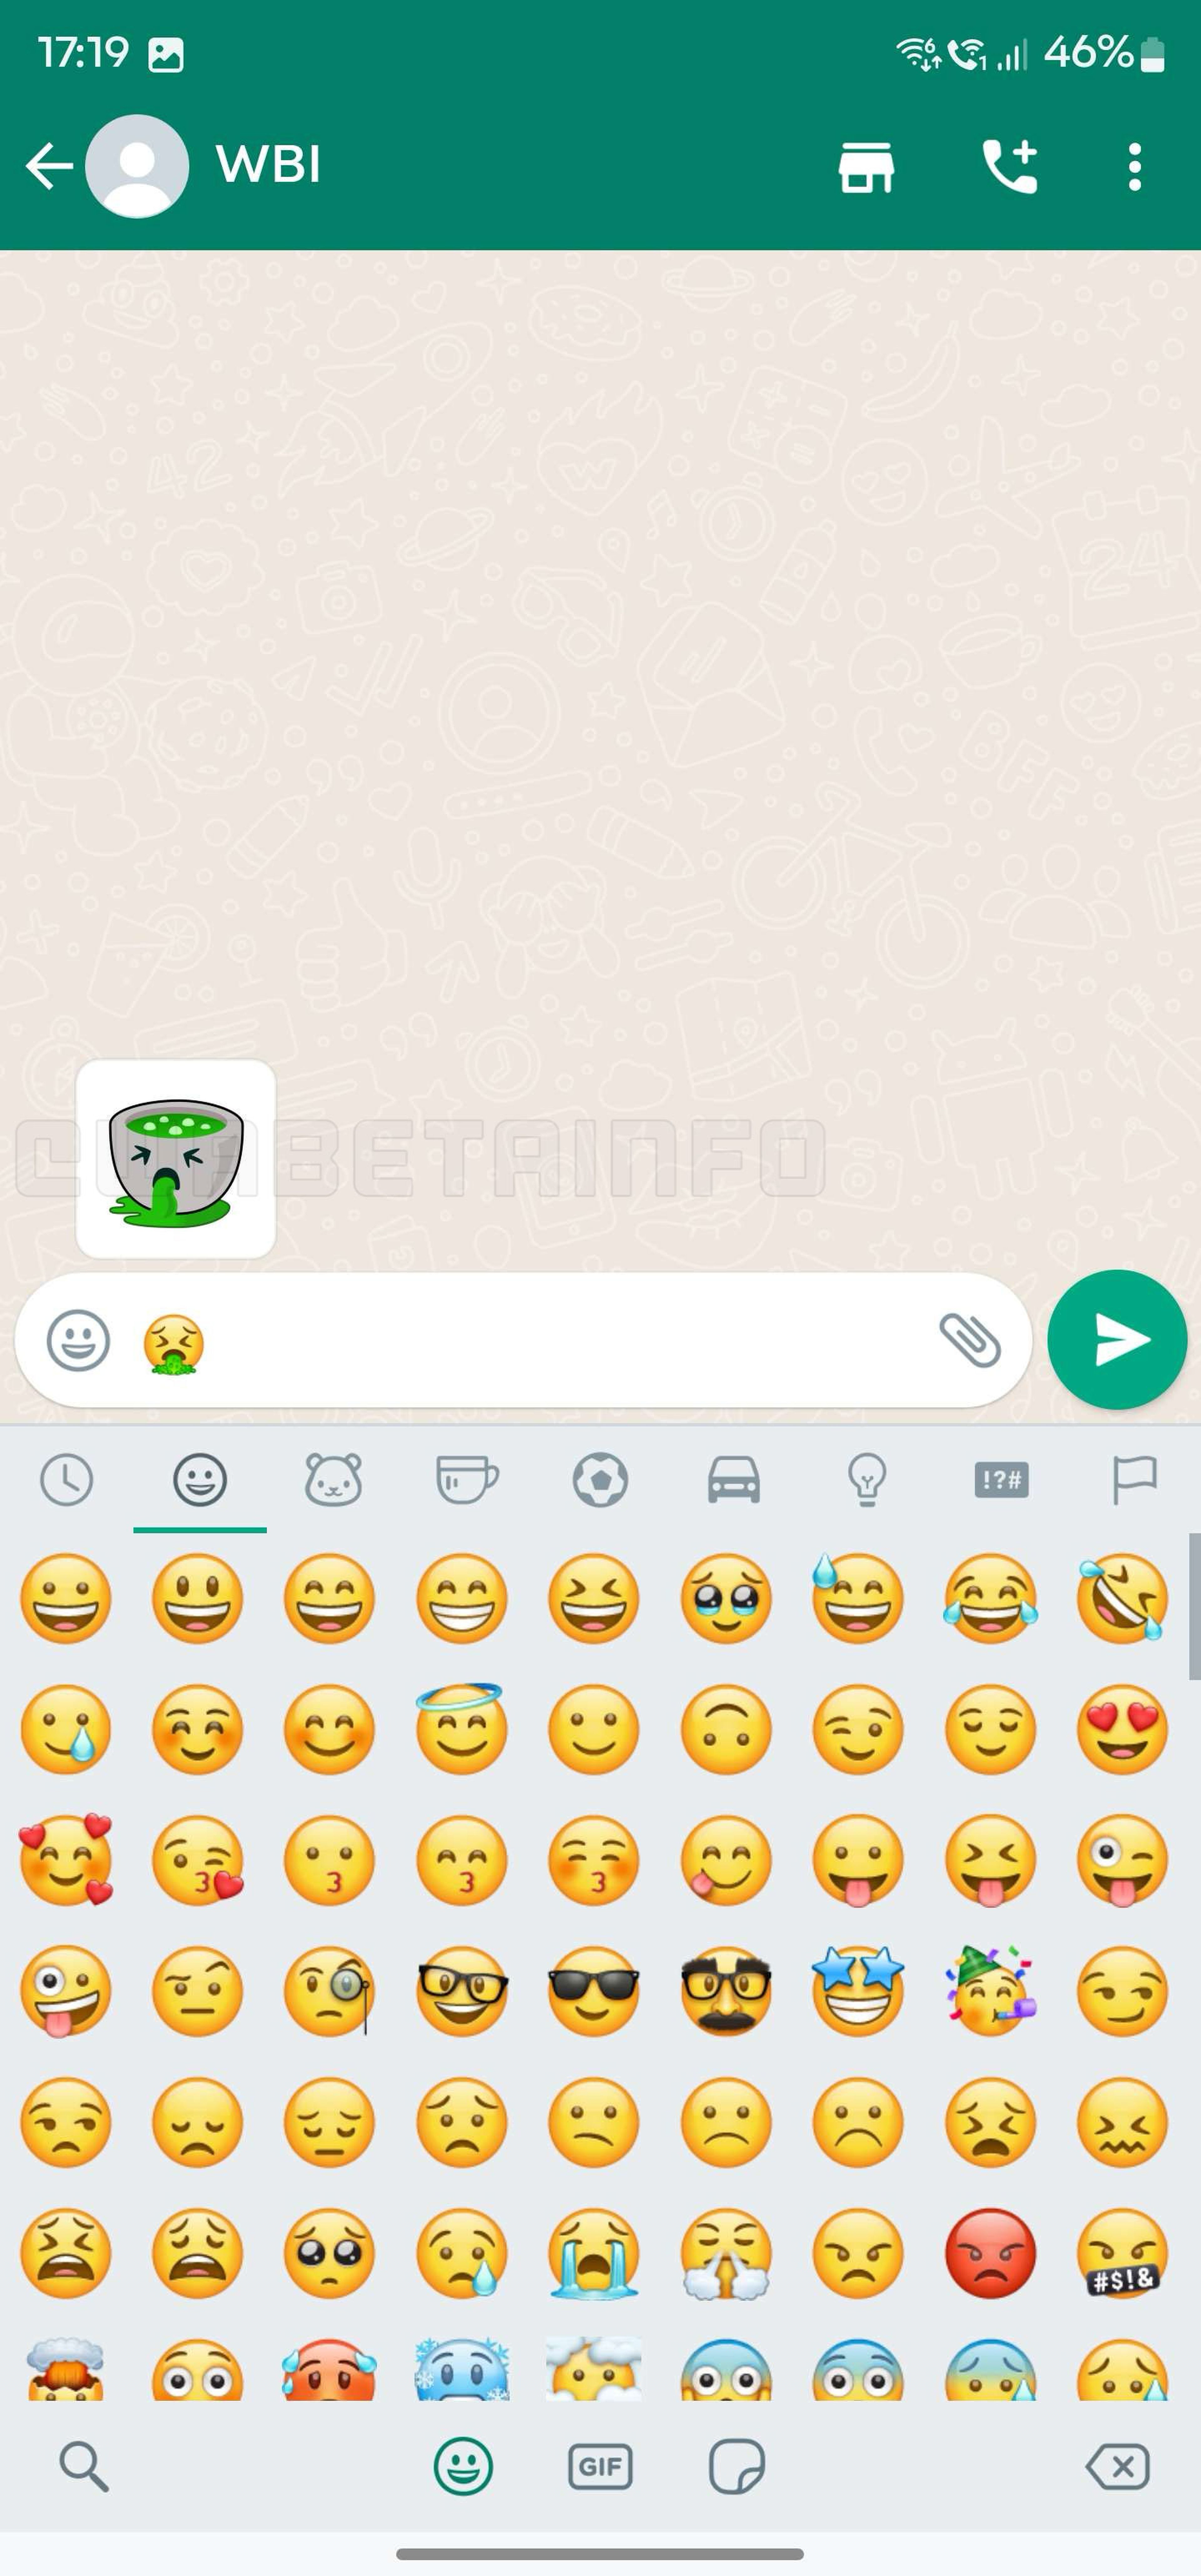 Sugerencias inteligentes de pegatinas en WhatsApp